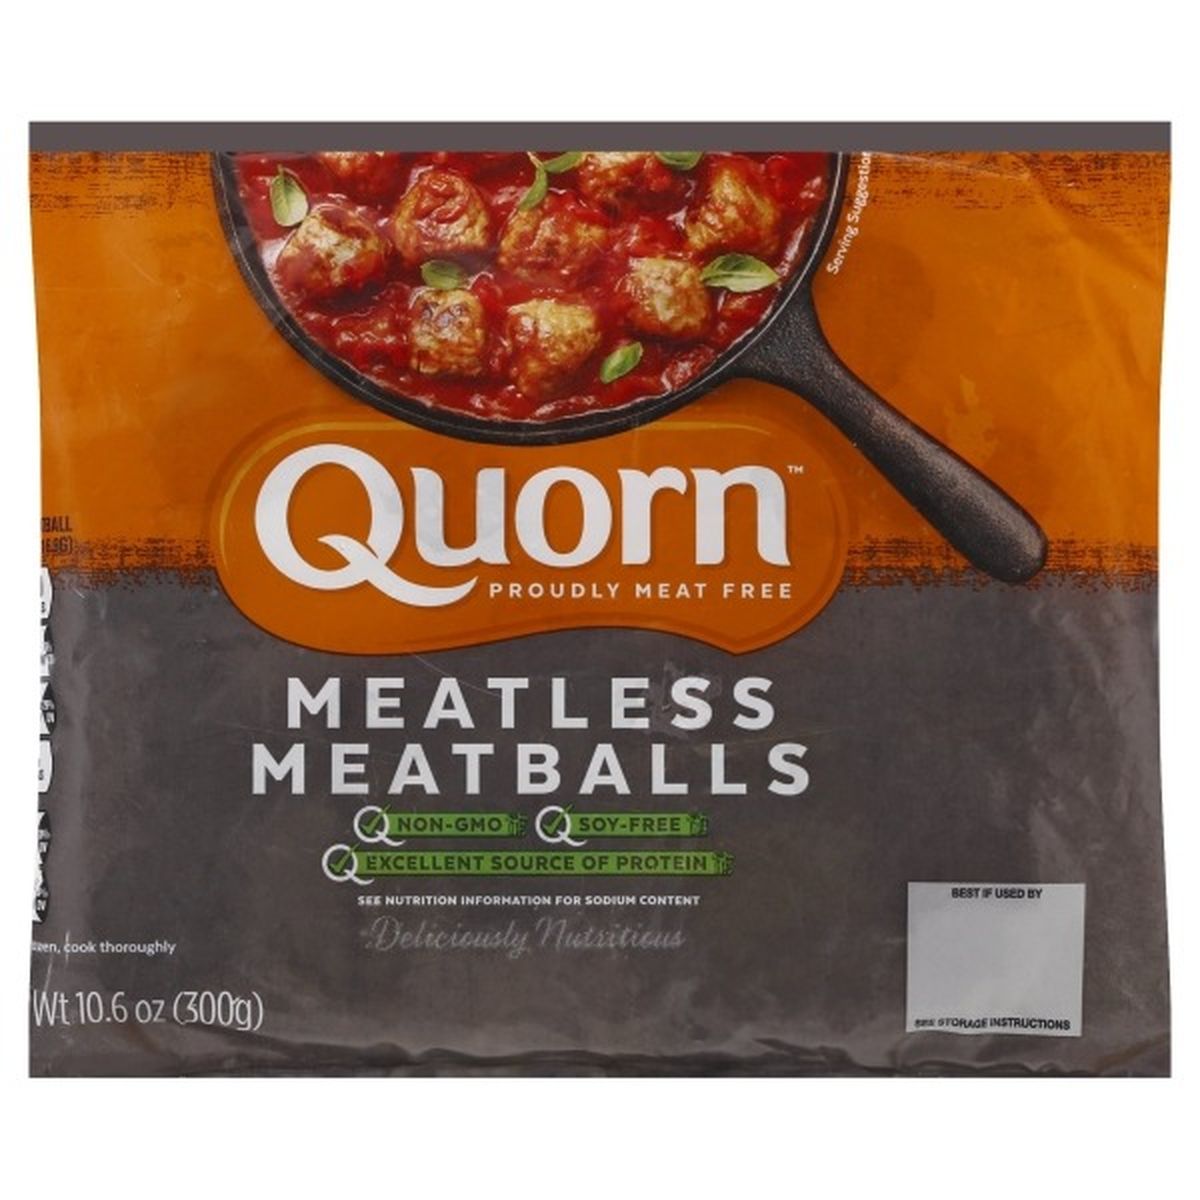 Calories in Quorn Meatballs, Meatless